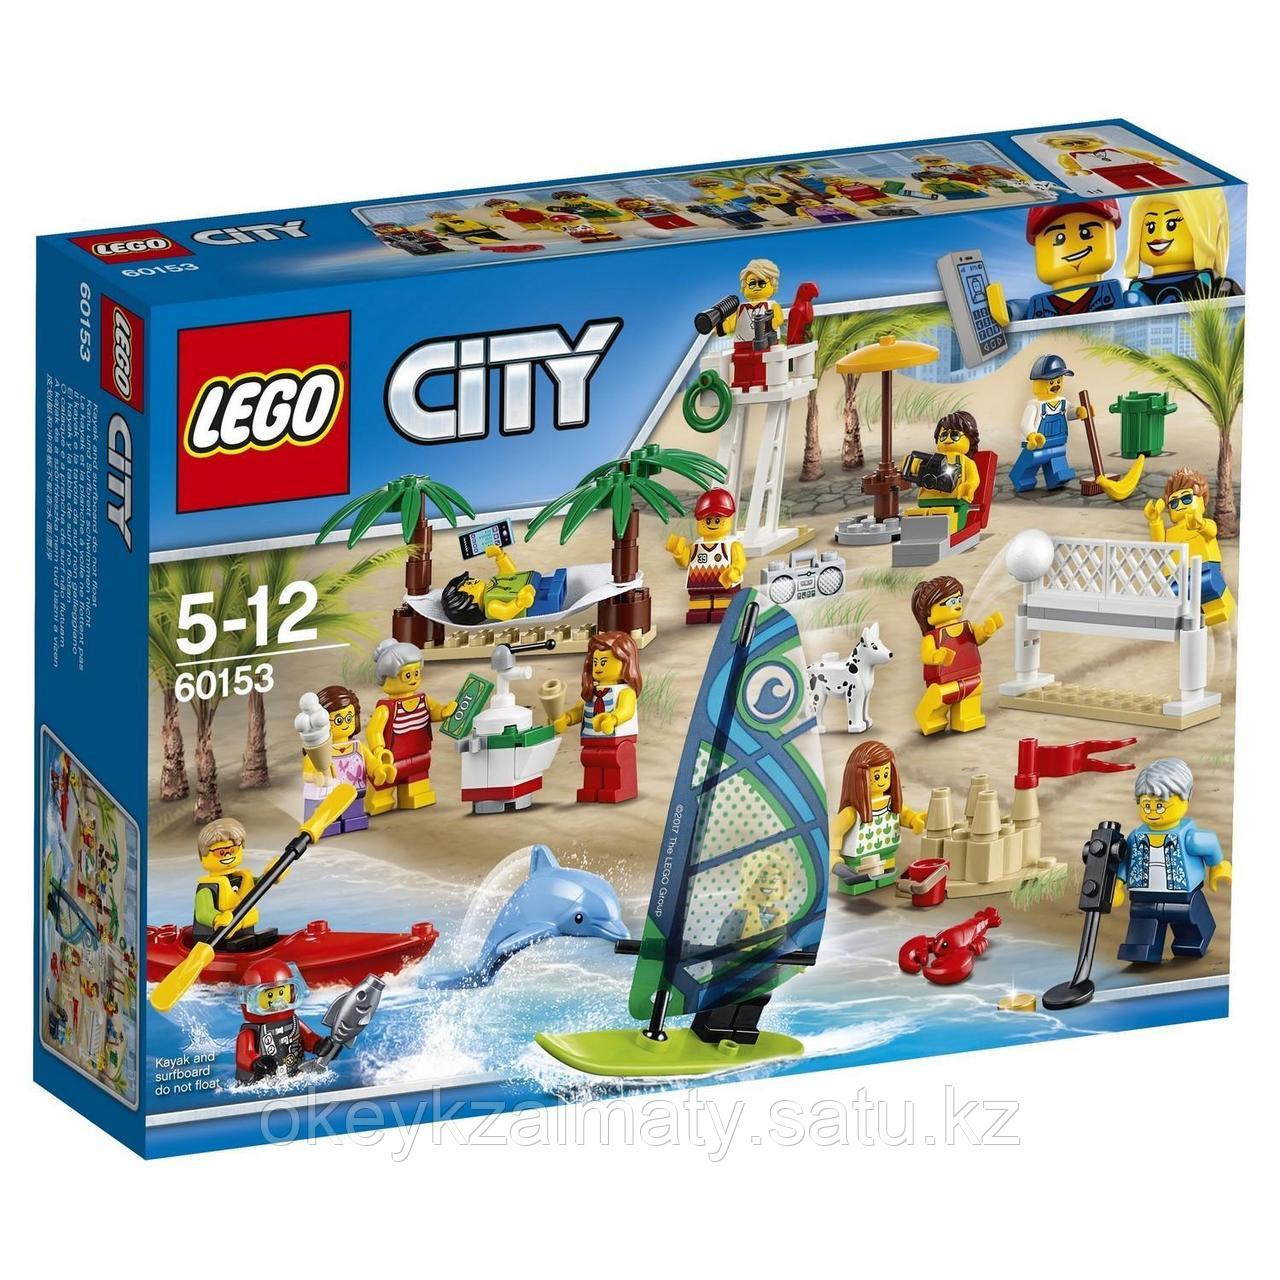 LEGO City: Отдых на пляже — жители LEGO City  60153